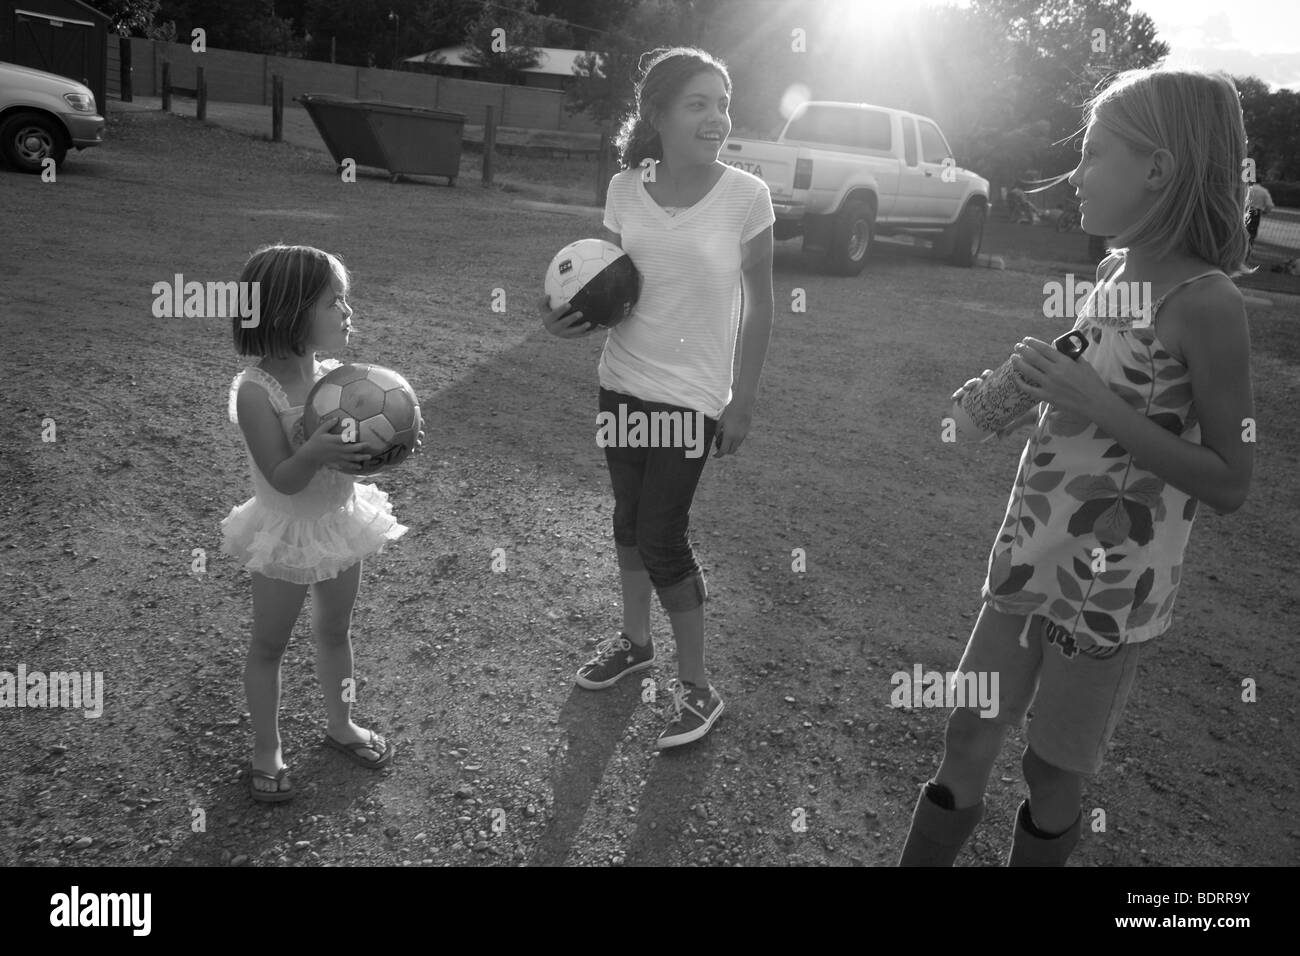 Schwarz / weiß Bild von drei Mädchen mit Soccer ball Stockfoto